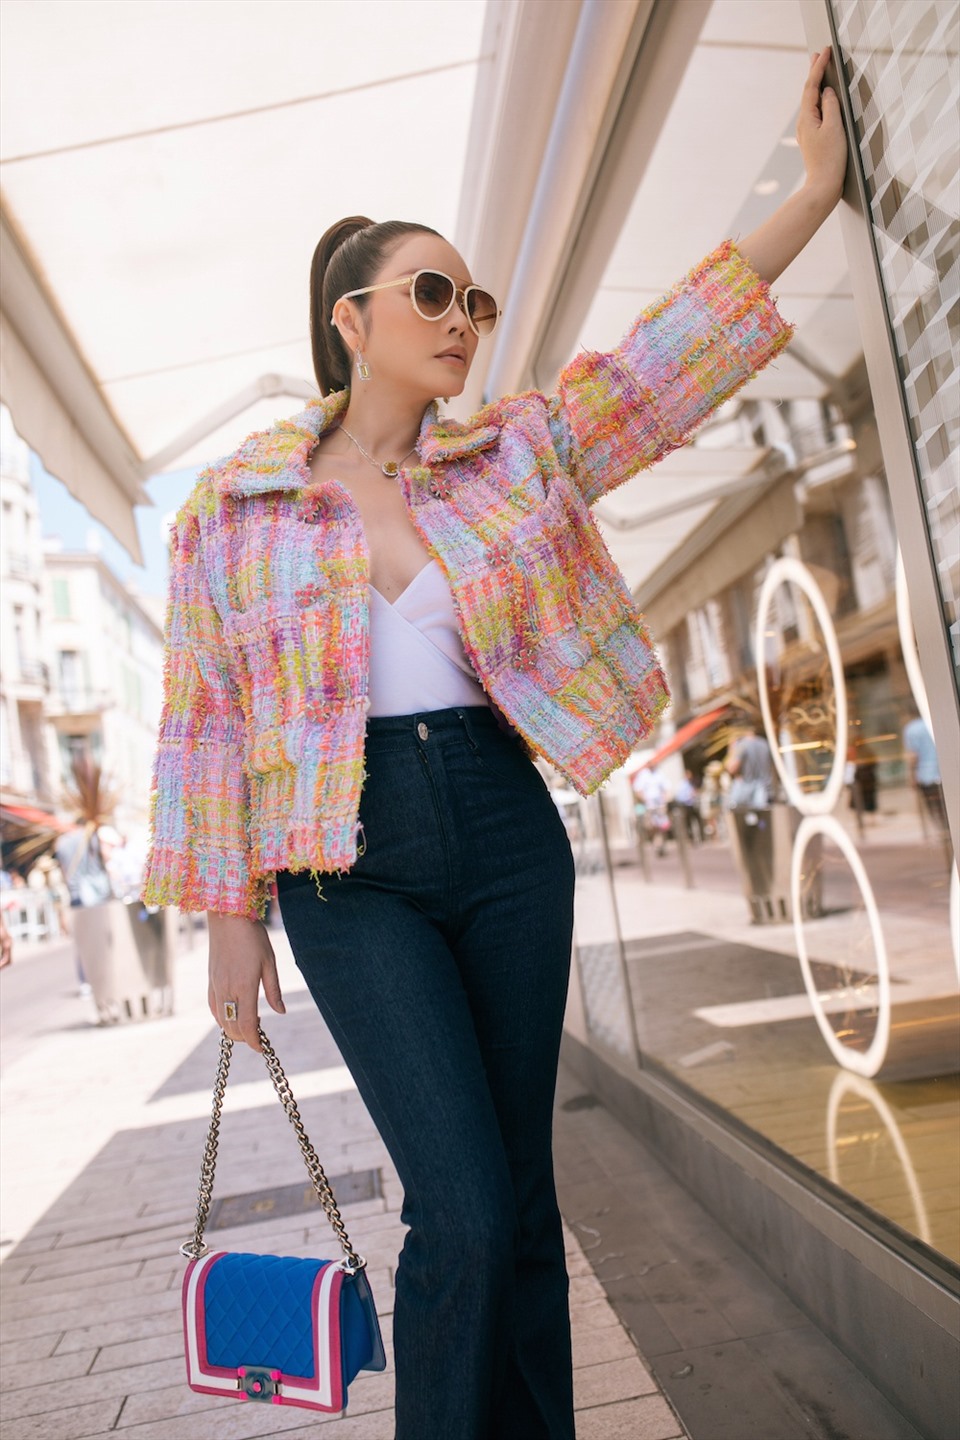 Chiếc áo khoác tweed đầy màu sắc của Chanel giúp Lý Nhã Kỳ nổi bật trên đường phố. Nữ diễn viên khéo léo kết hợp với phụ kiện cùng hãng, gây ấn tượng bởi vẻ ngoài nữ tính.